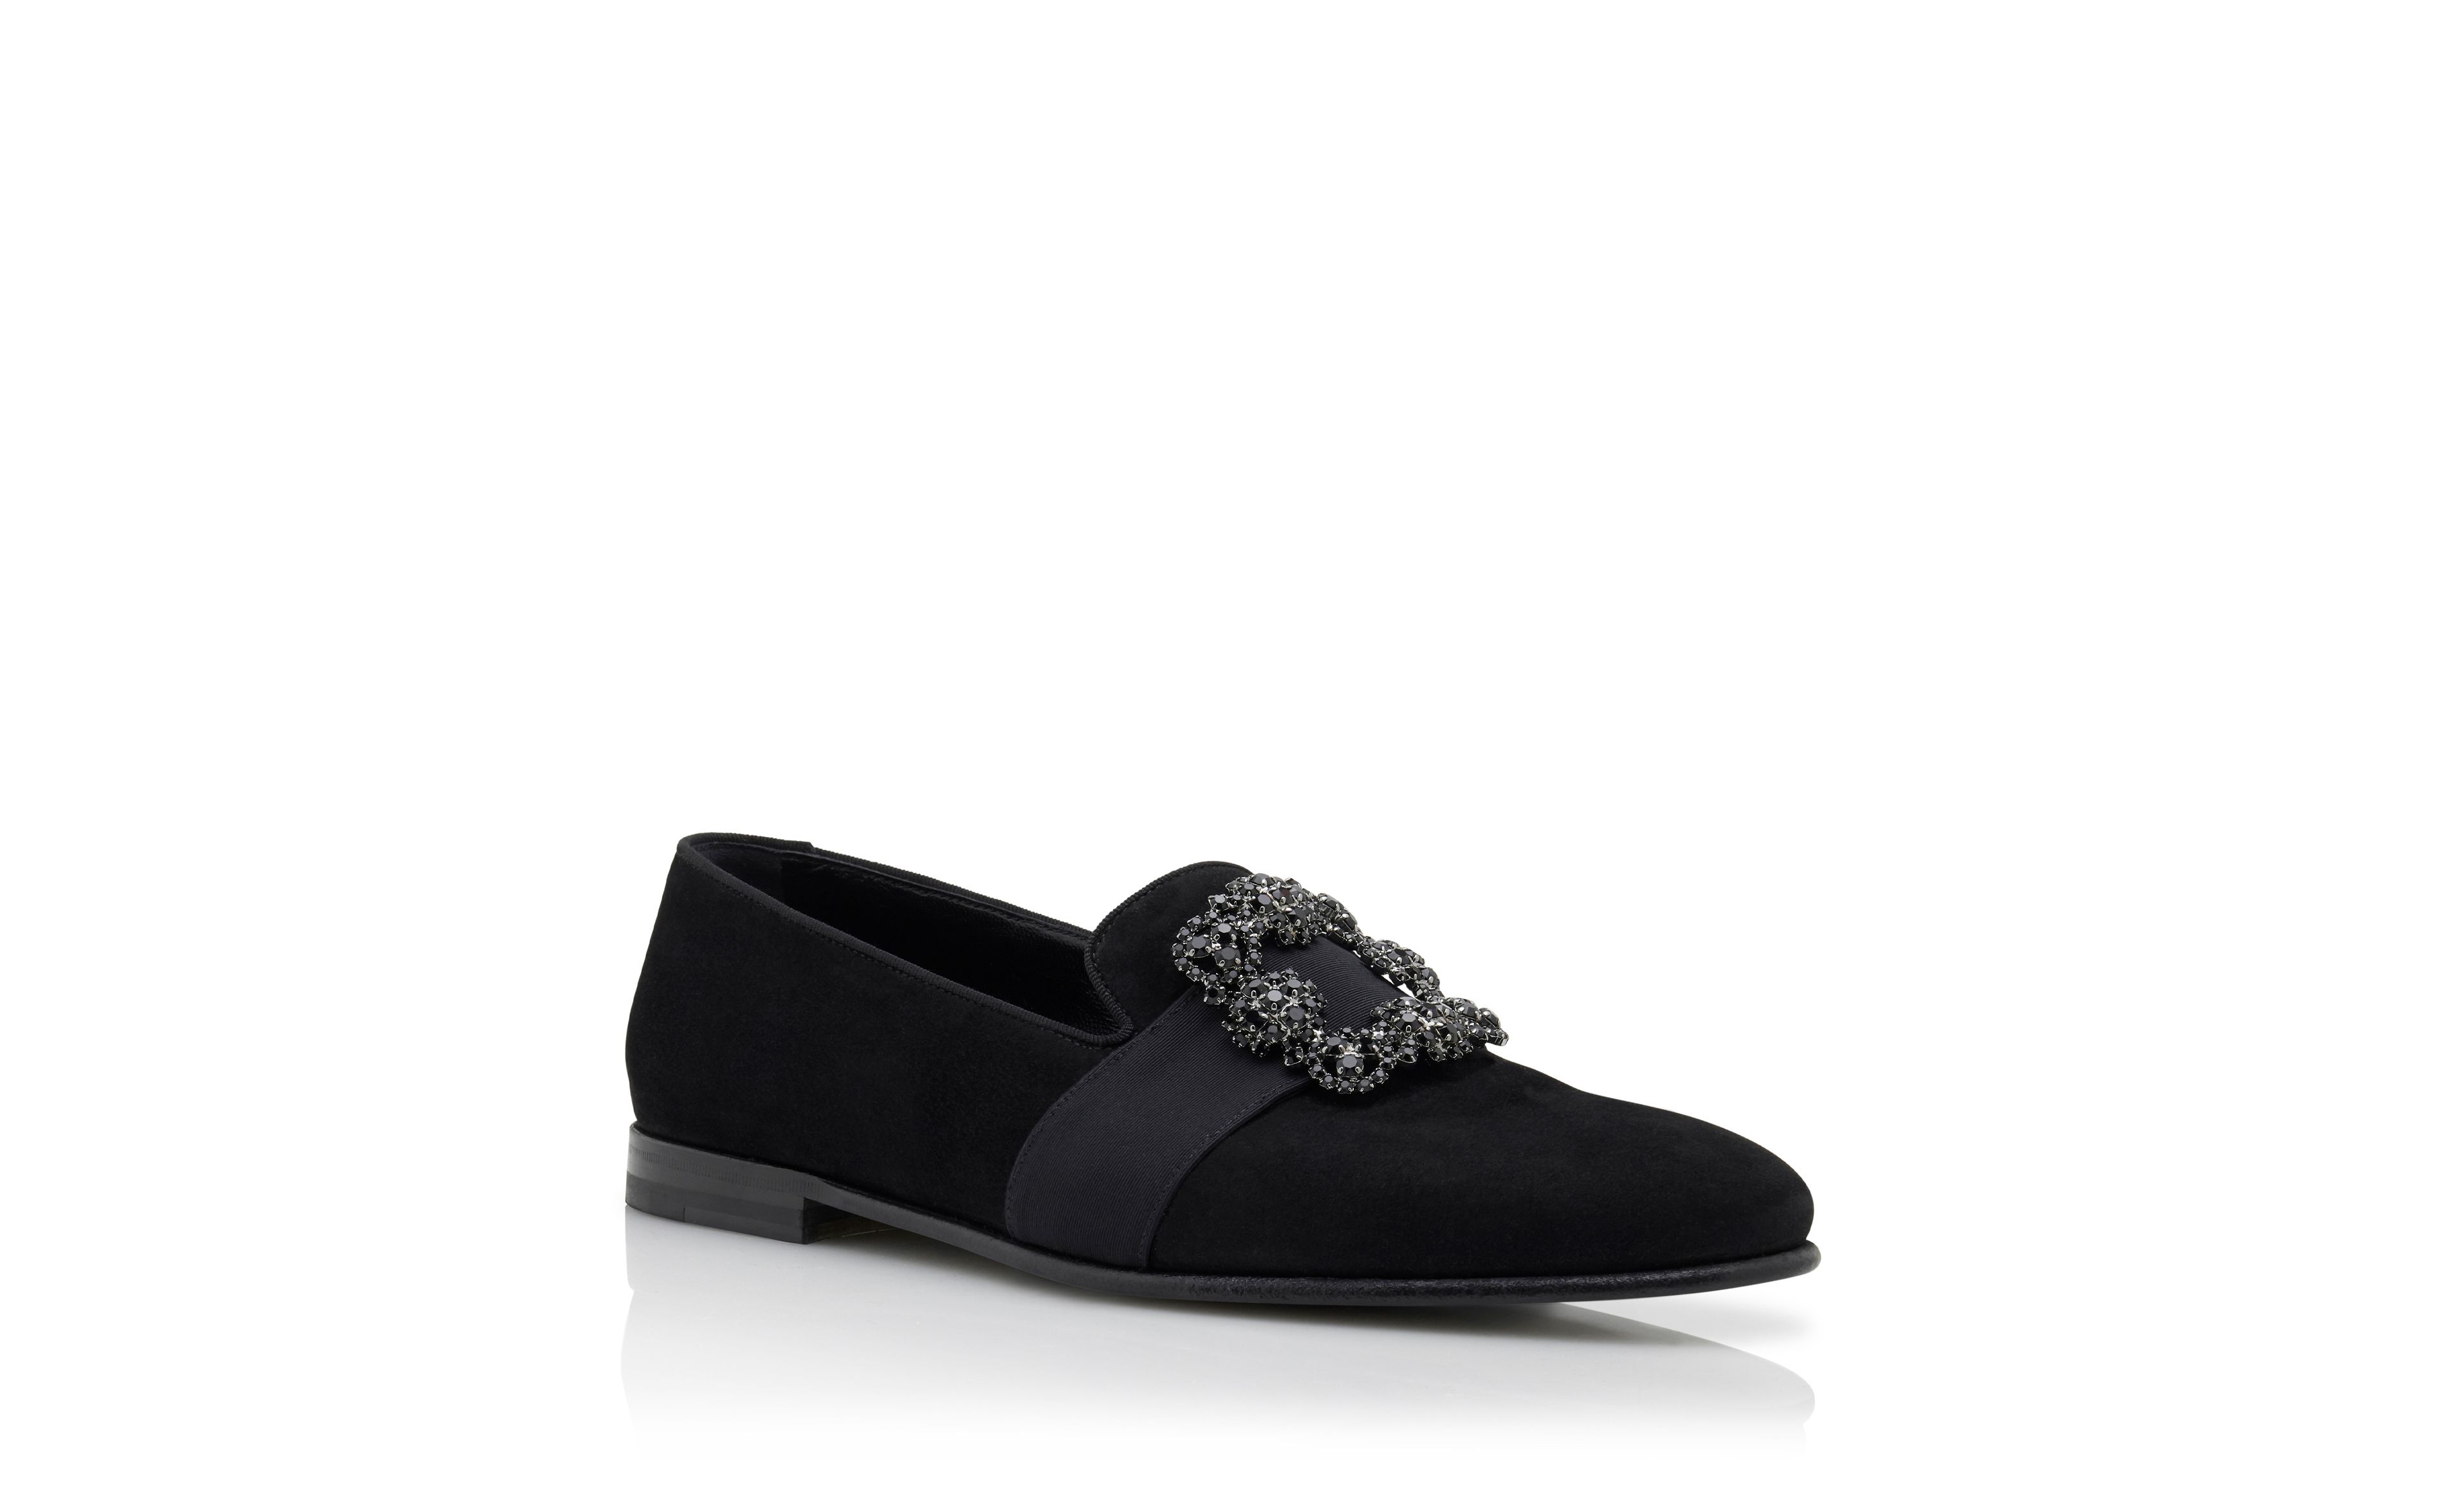 Designer Black Suede Jewel Buckled Loafers - Image Upsell